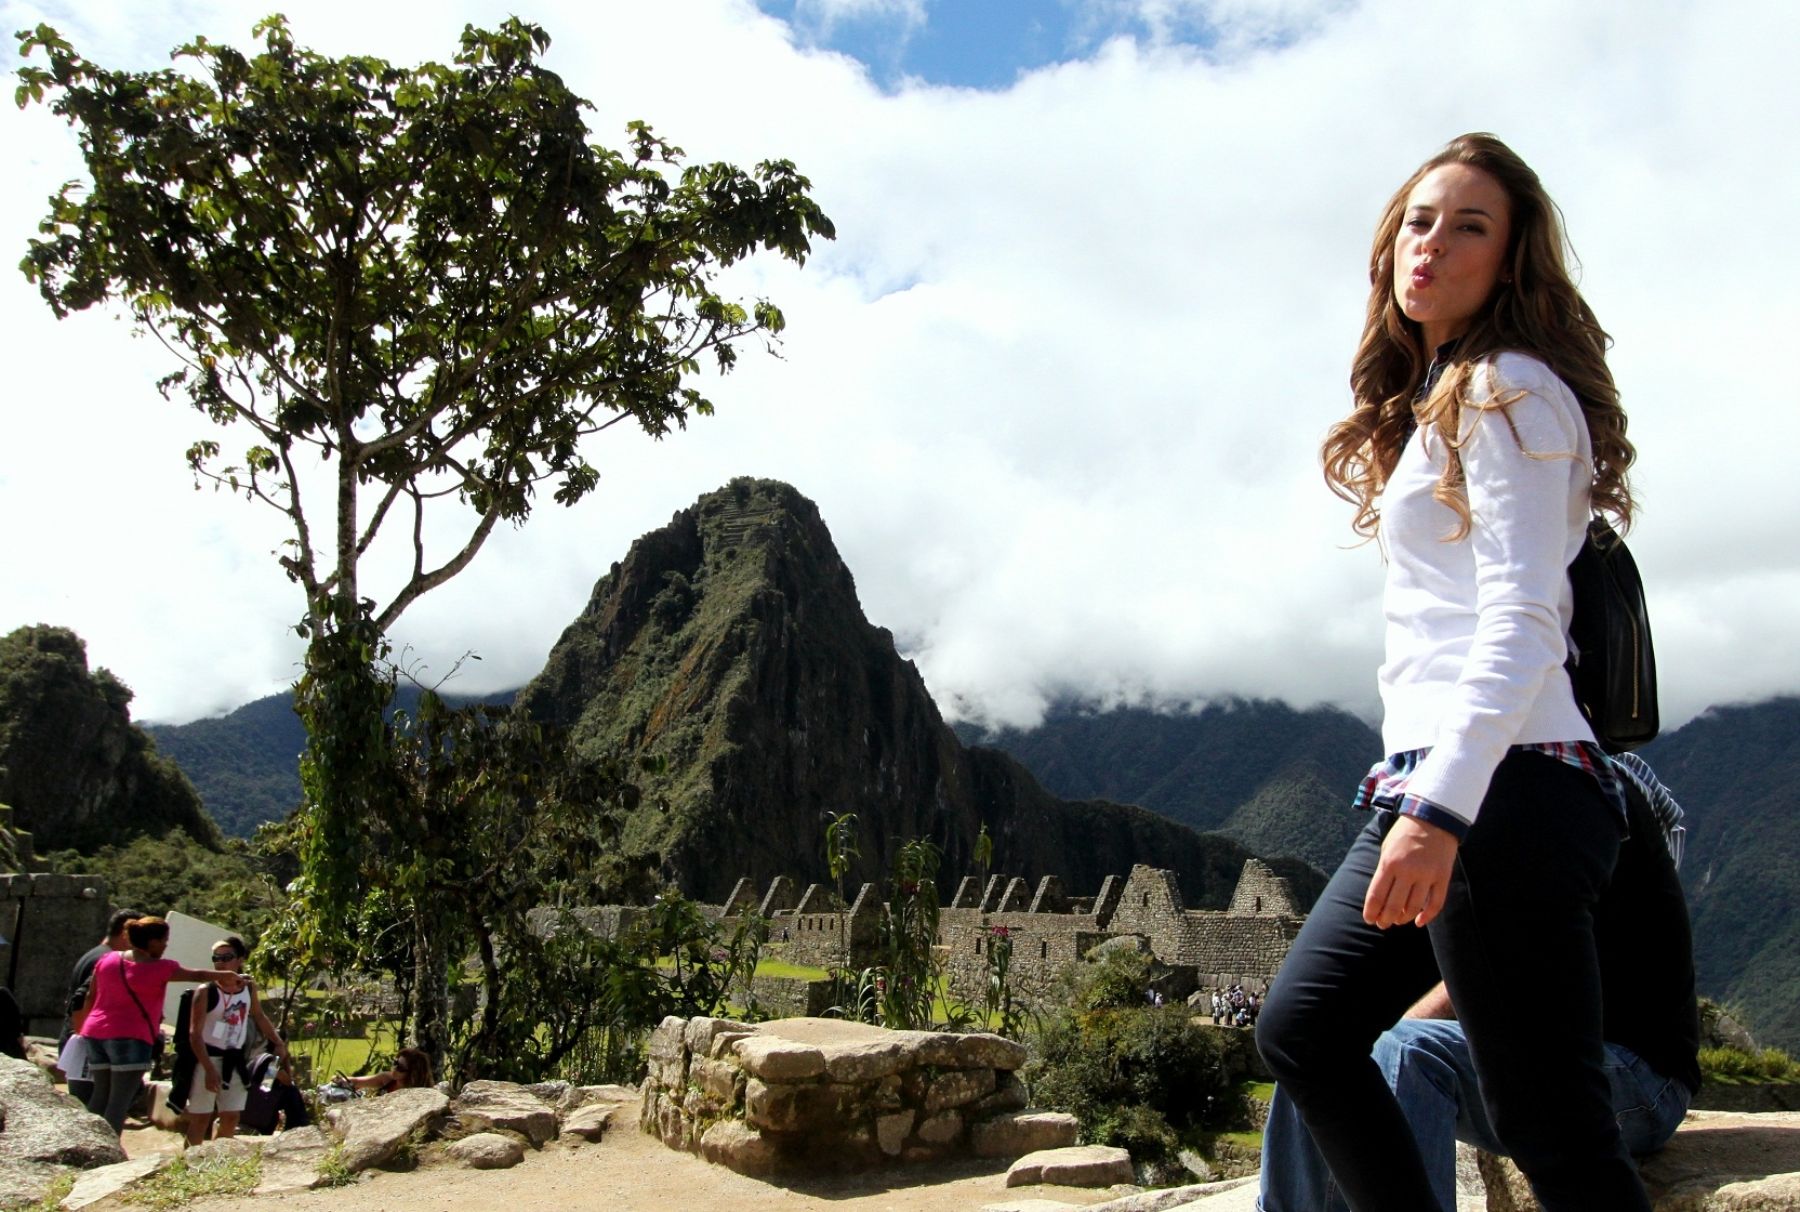 La actriz brasileña Paolla Oliveira se mostró feliz por su visita a Machu Picchu, donde grabó escenas de la telenovela que protagoniza.